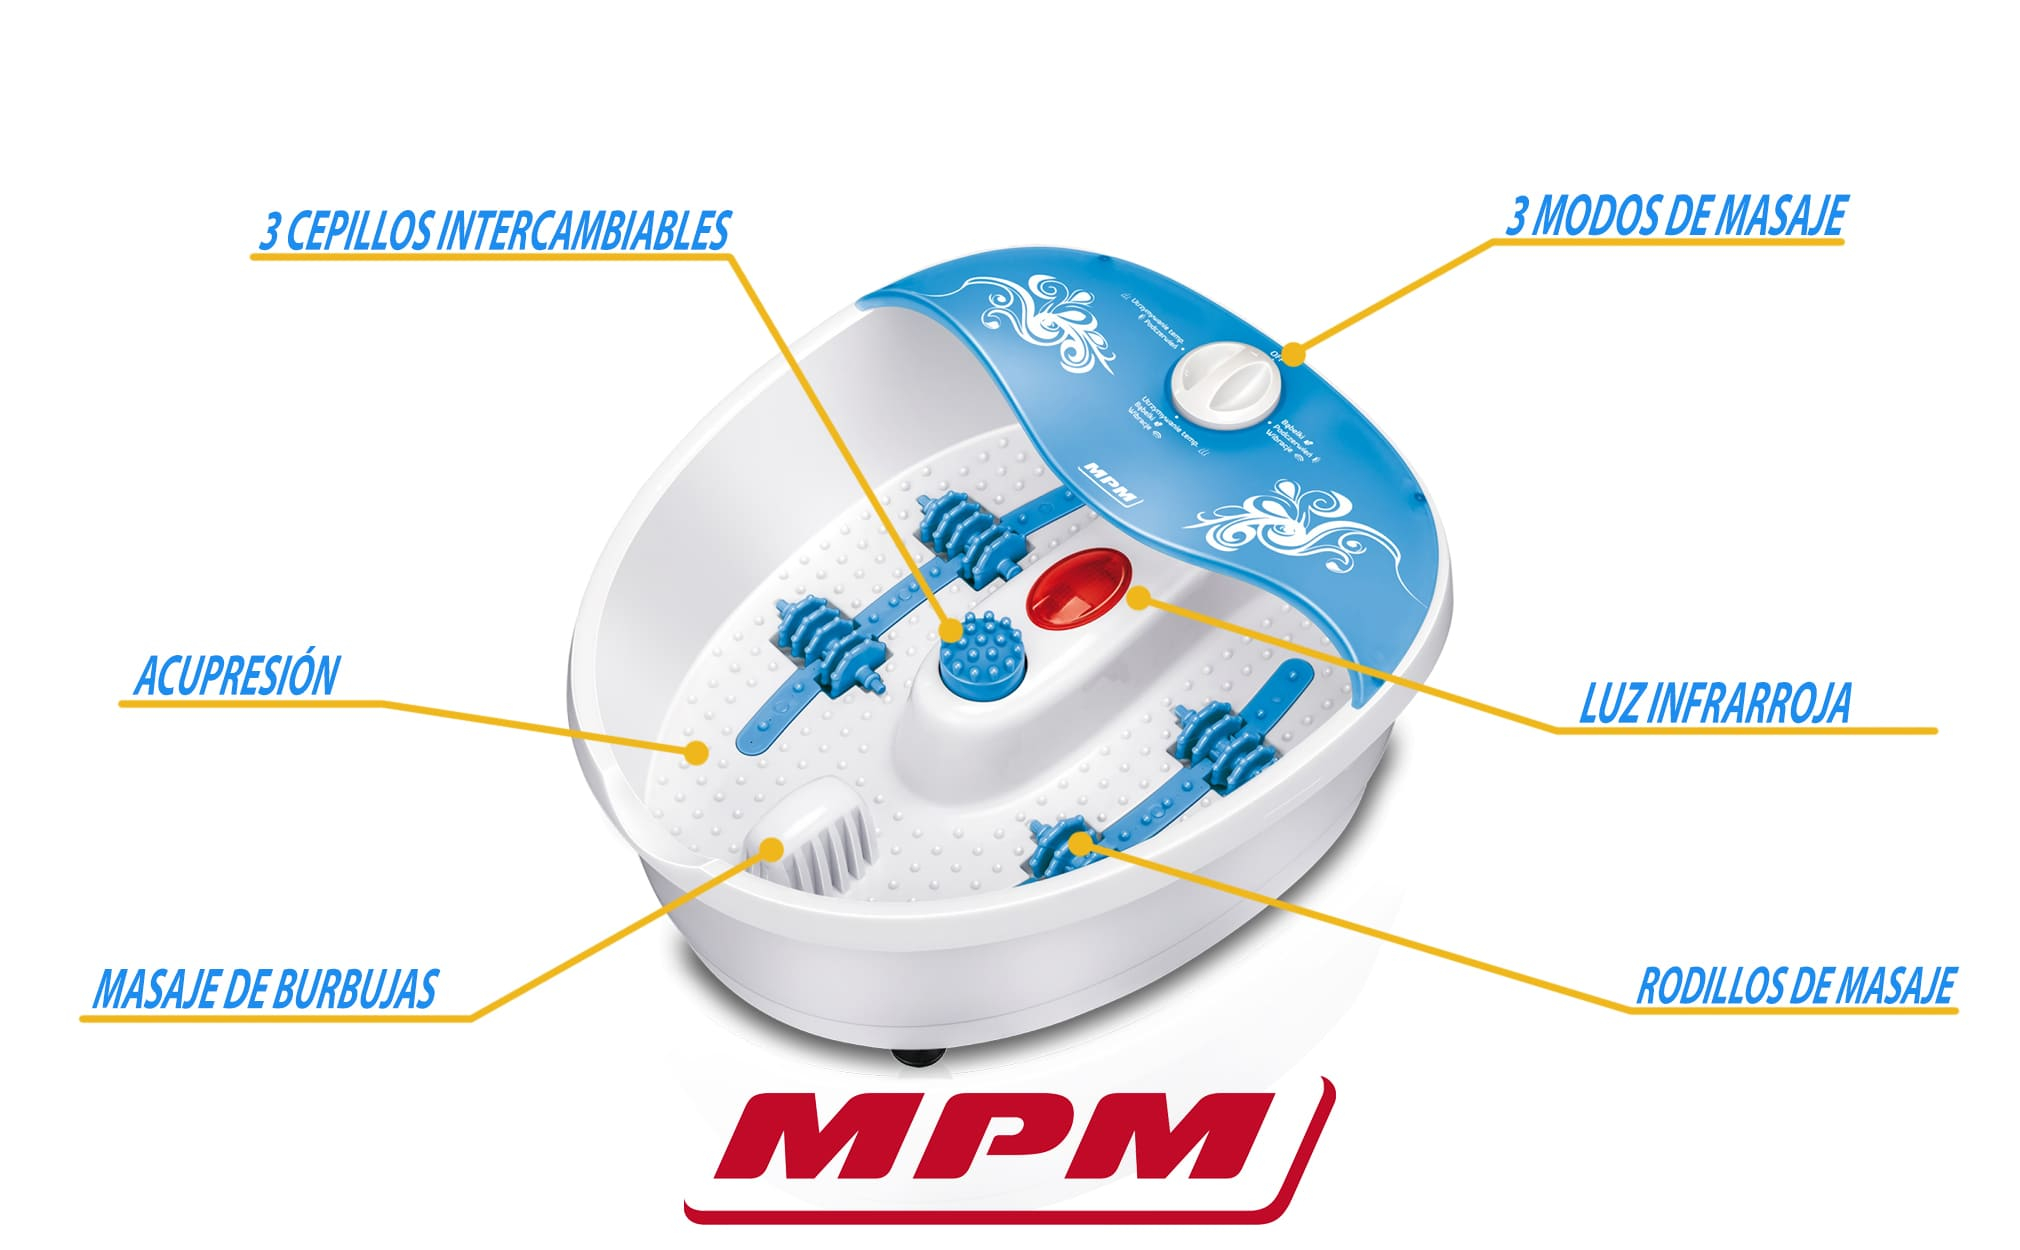 Massagegerät MMS-01 MPM